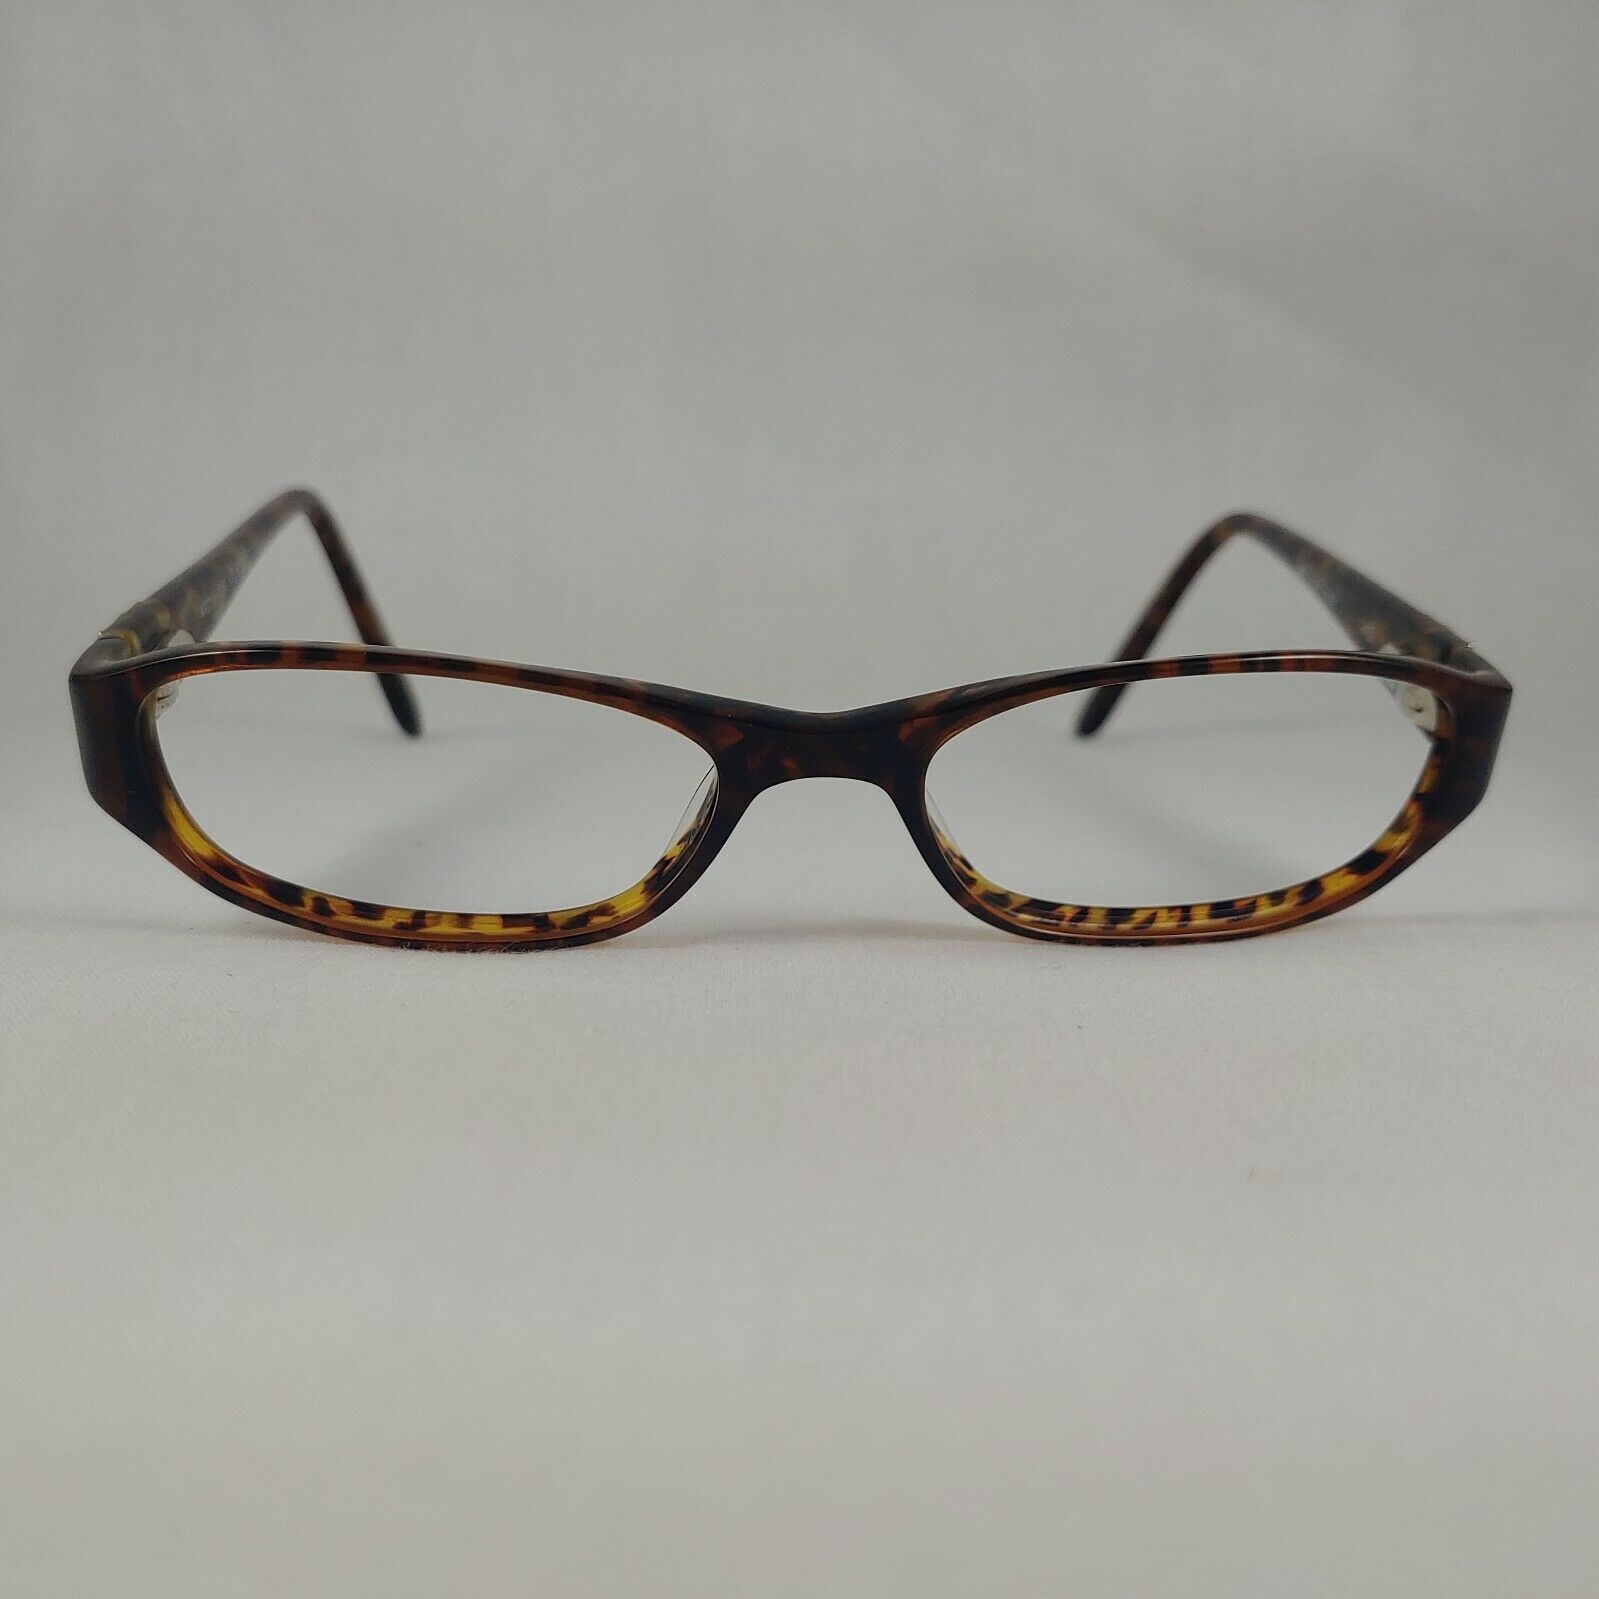 Karen Kane Eyeglass Frames Gold Leaves Sage Tortoise Shell Plastic Rim ...